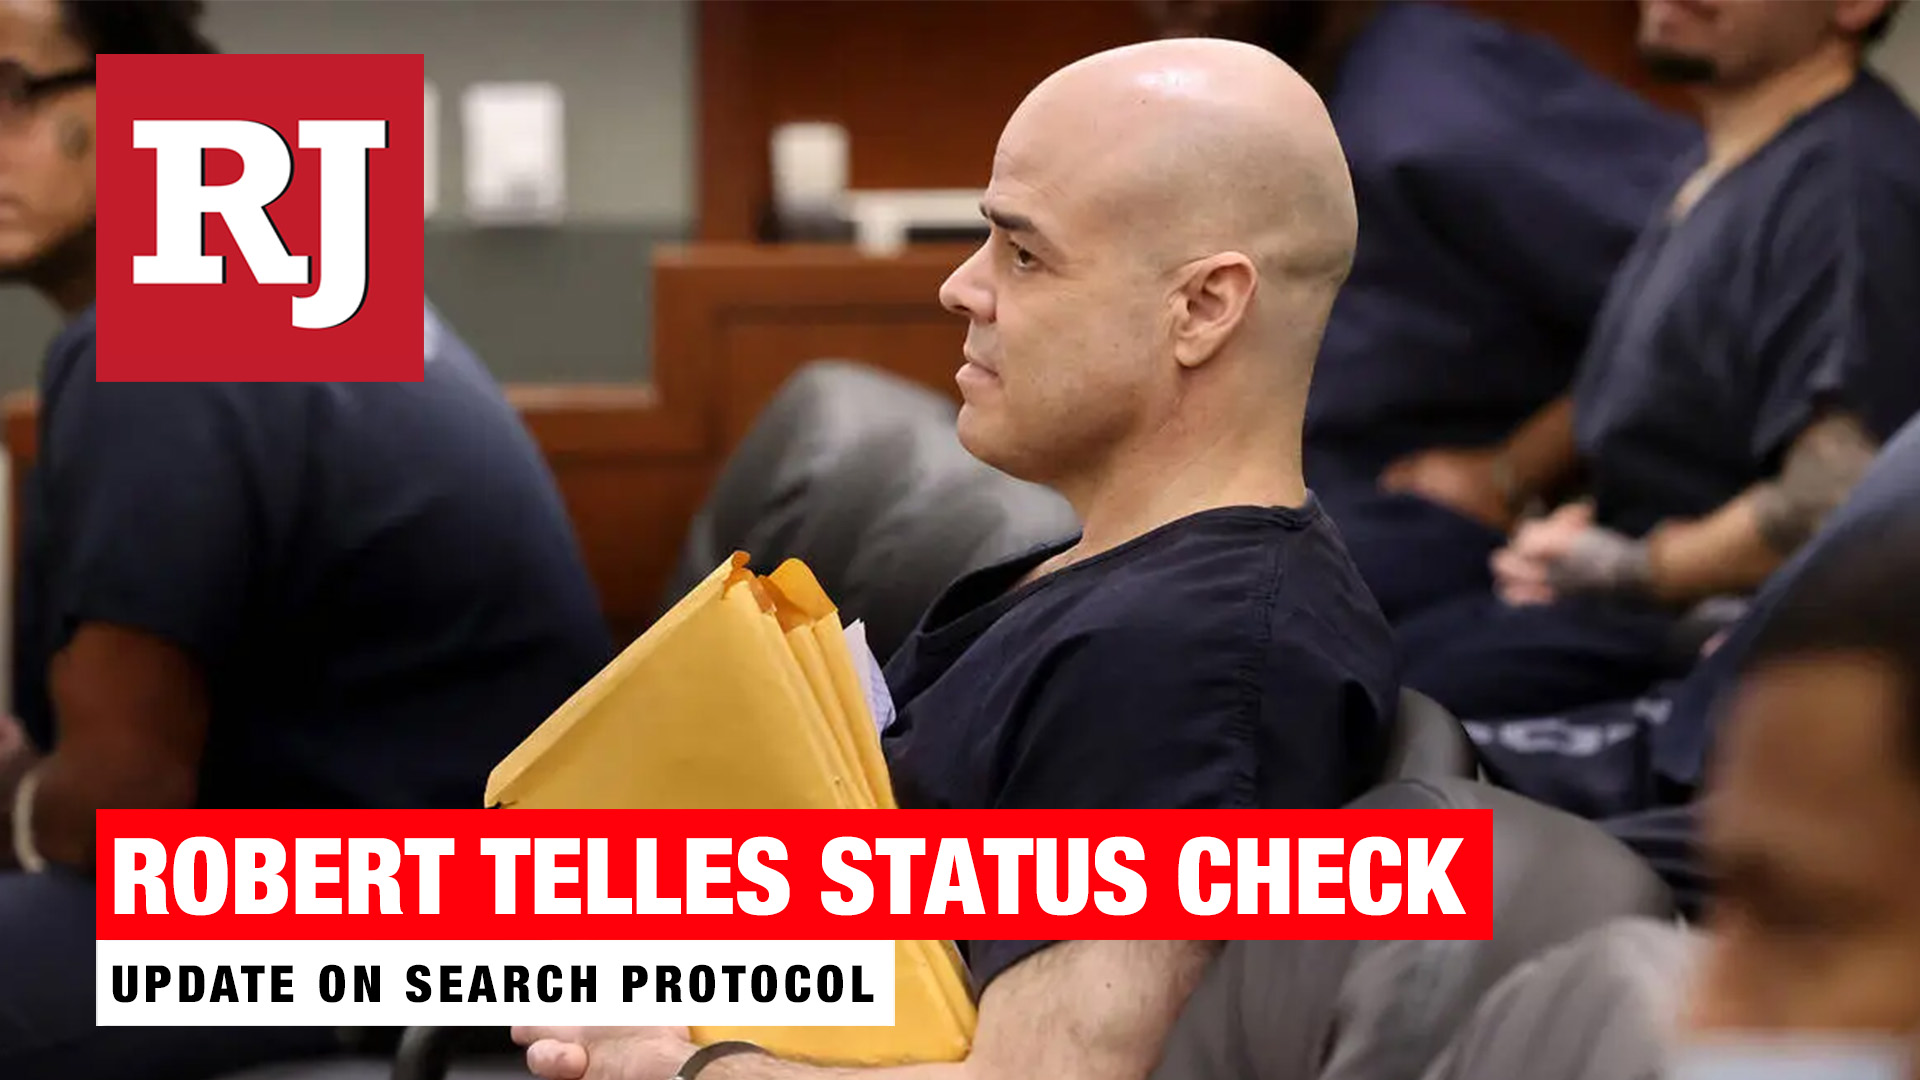 Robert Telles status check at Las Vegas Court